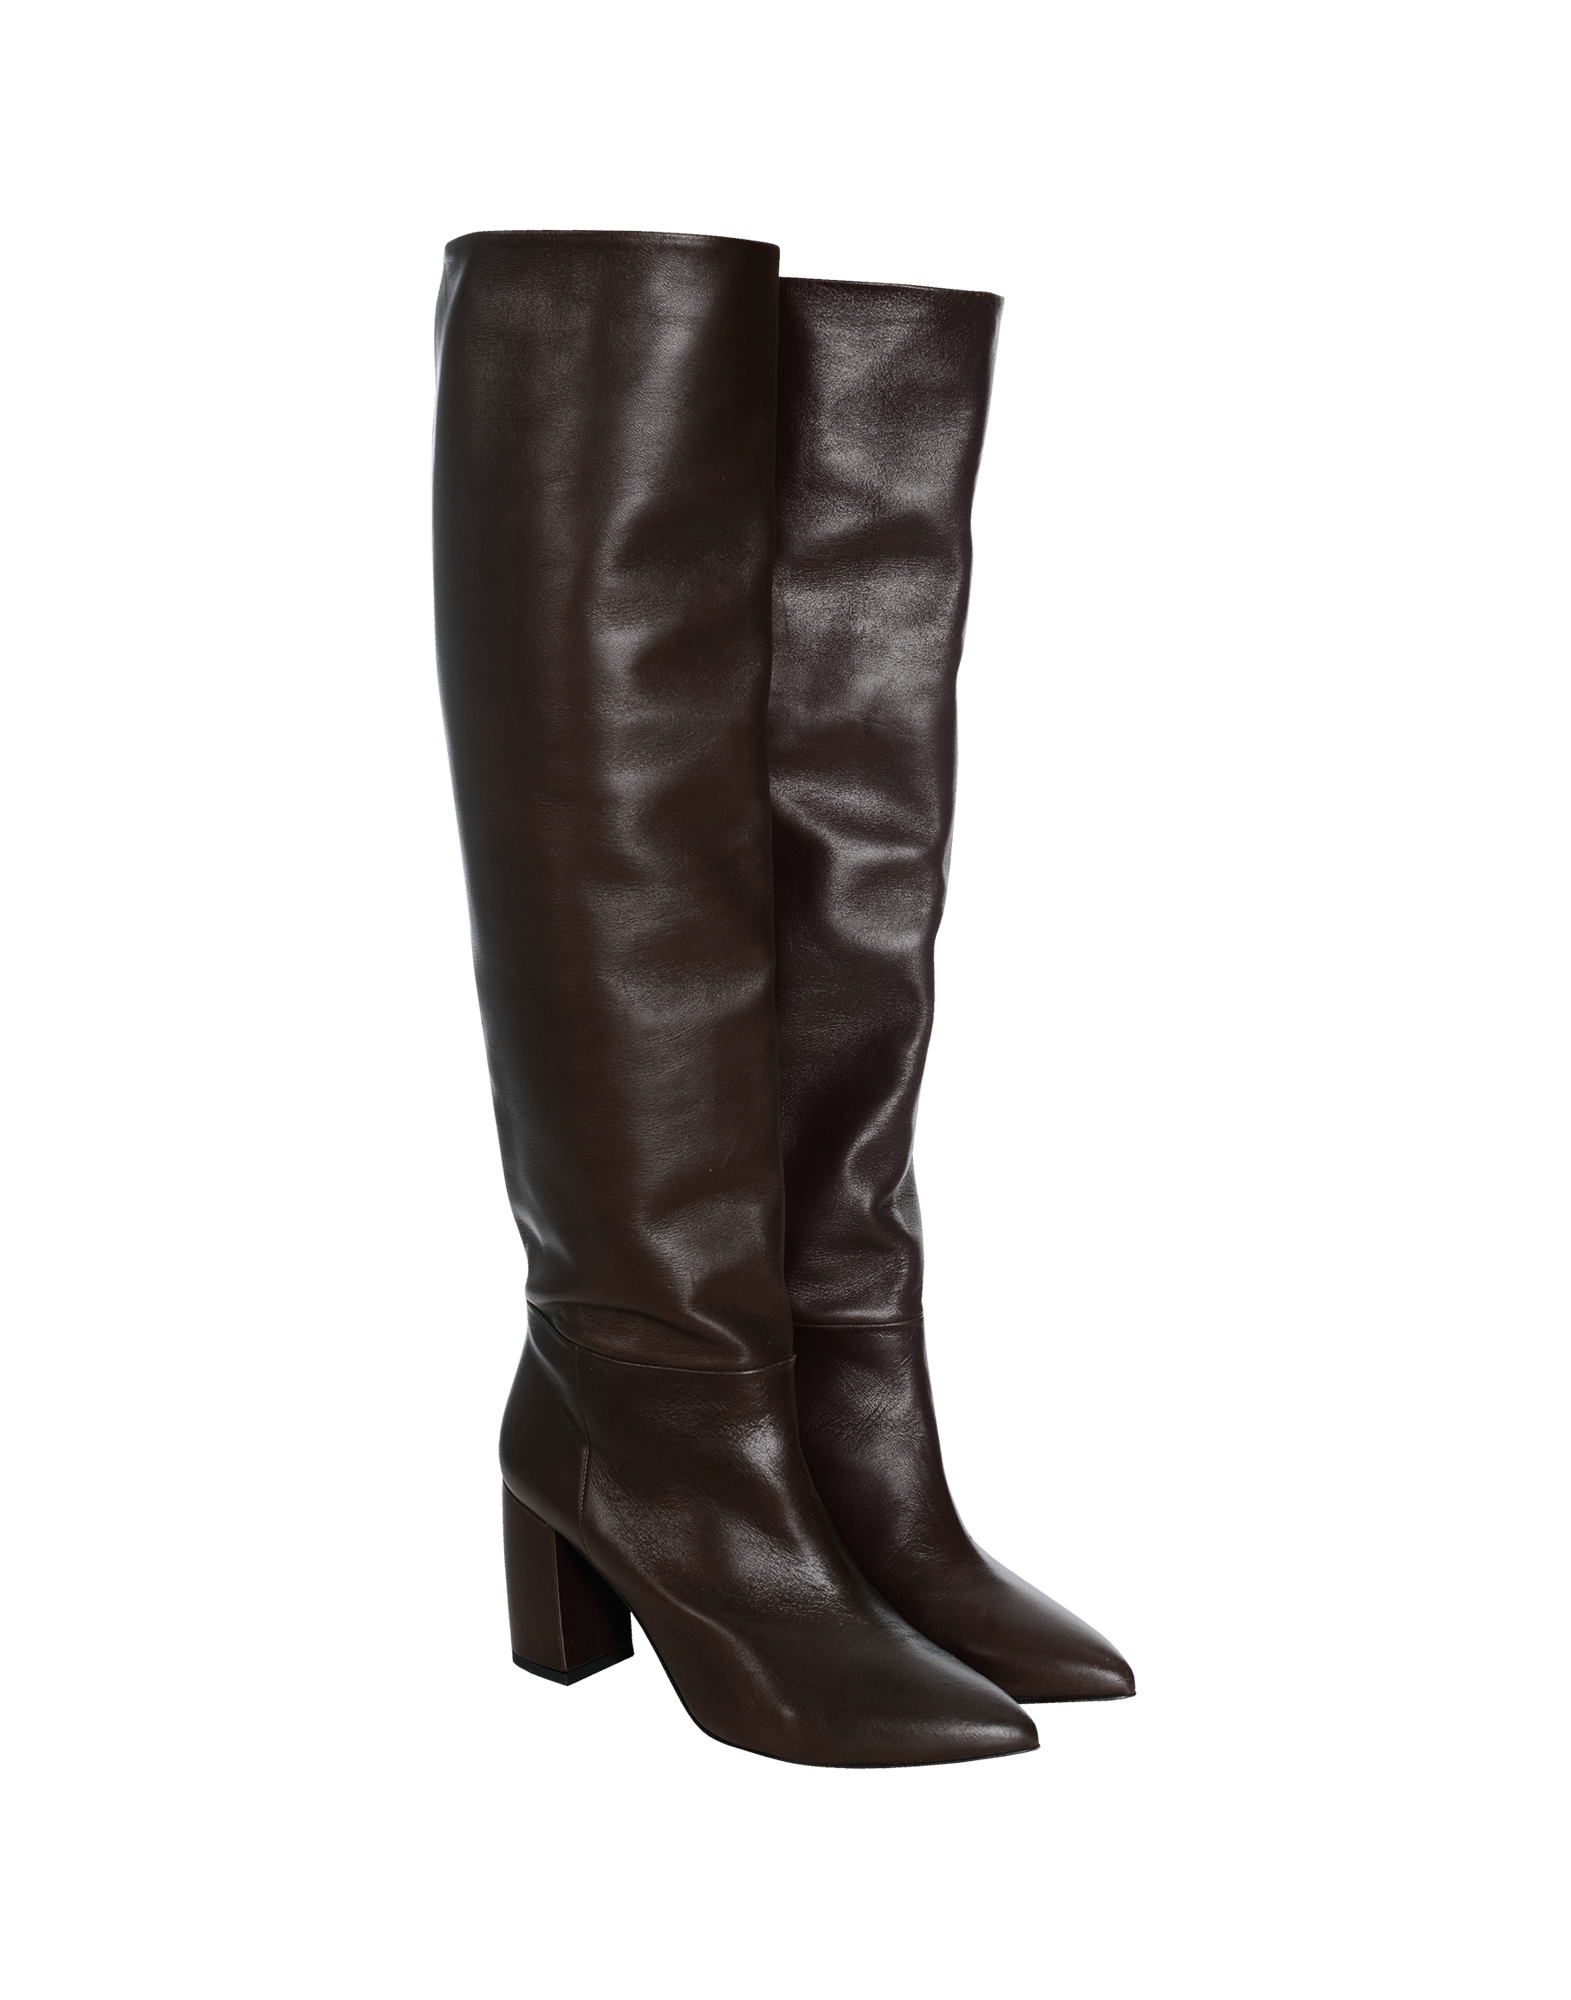 Buy > dark brown long boots > in stock